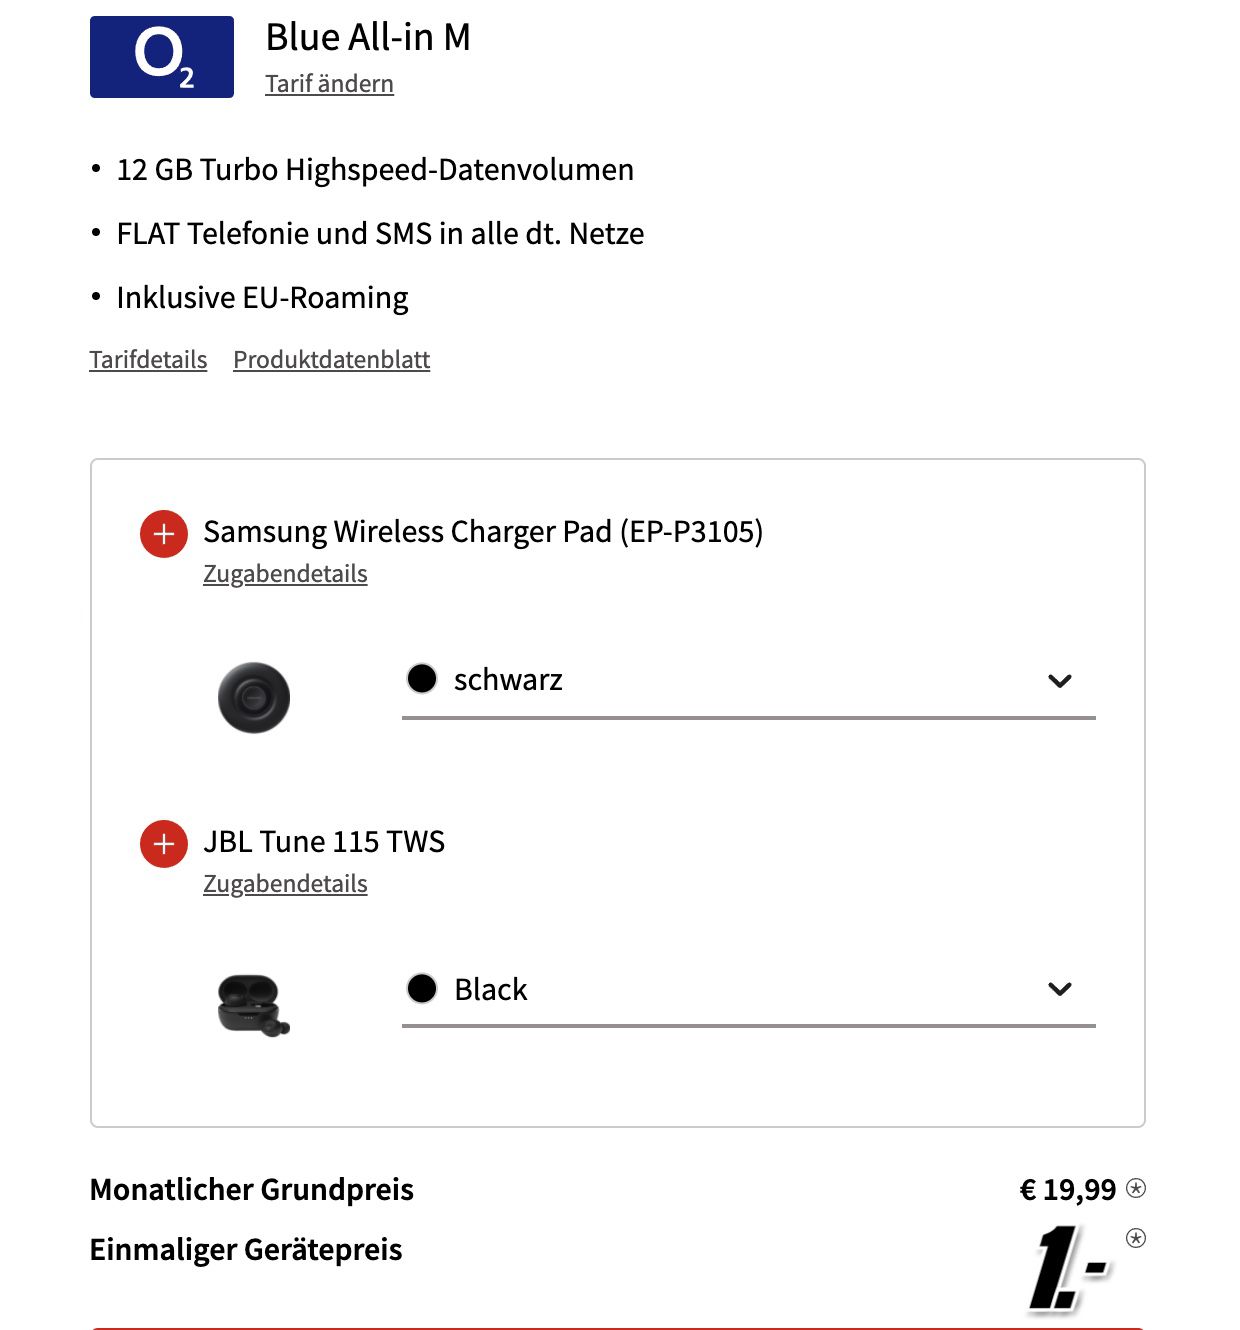 Samsung Galaxy S20 FE 128GB + wireless Charger Pad + HBL In Ears für 1€ + o2 Allnet Flat 12GB LTE für 19,99€ mtl.